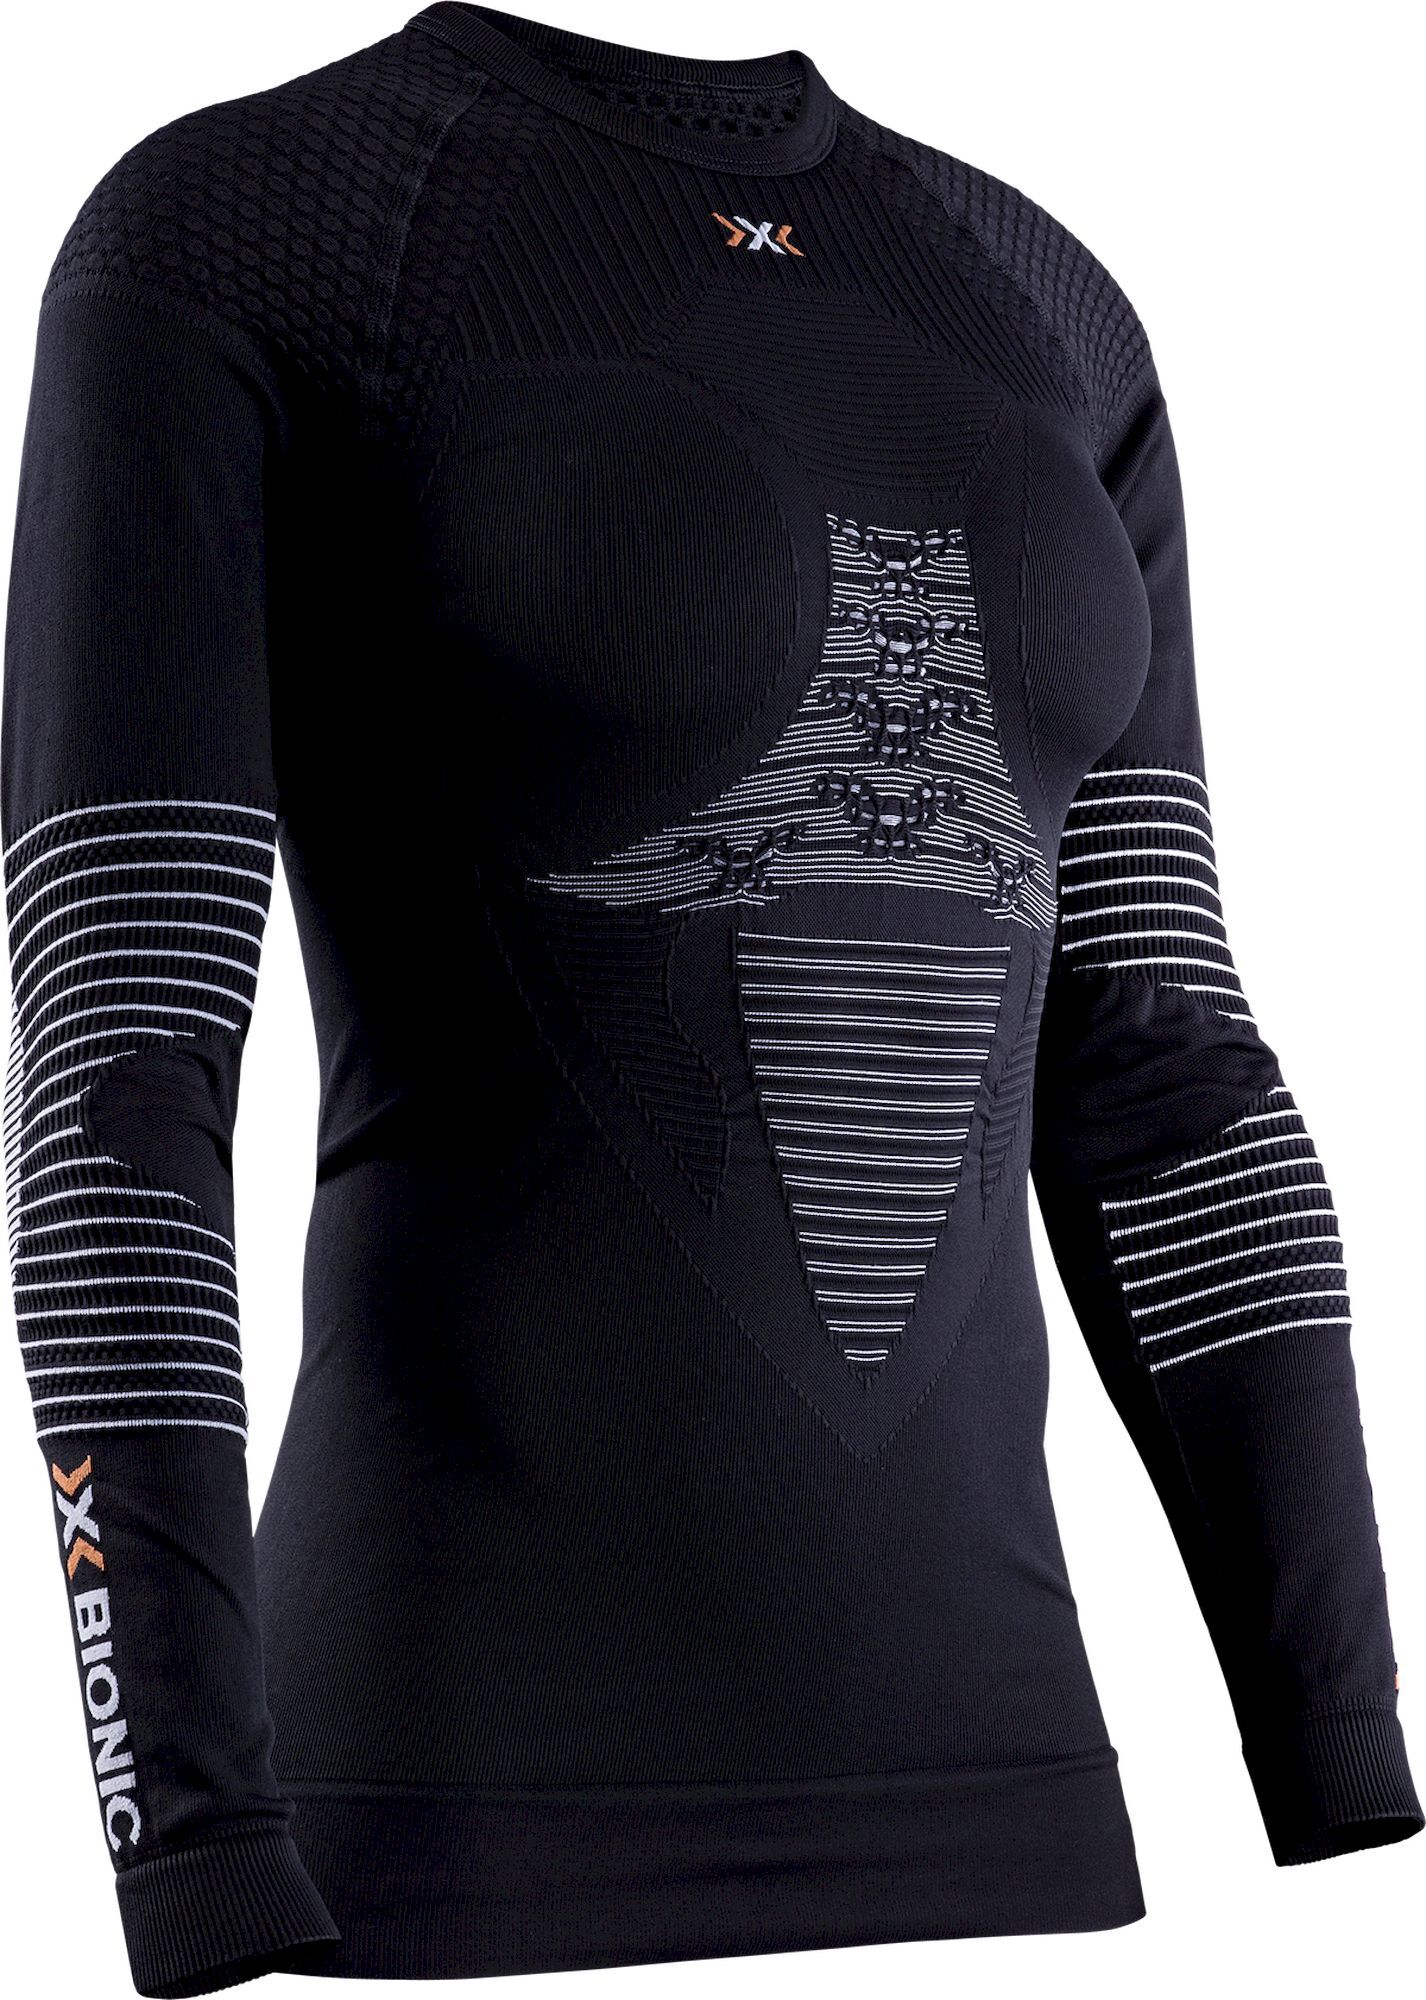 X-Bionic Energizer 4.0 Shirt Long Sleeve - Funktionsunterwäsche - Damen